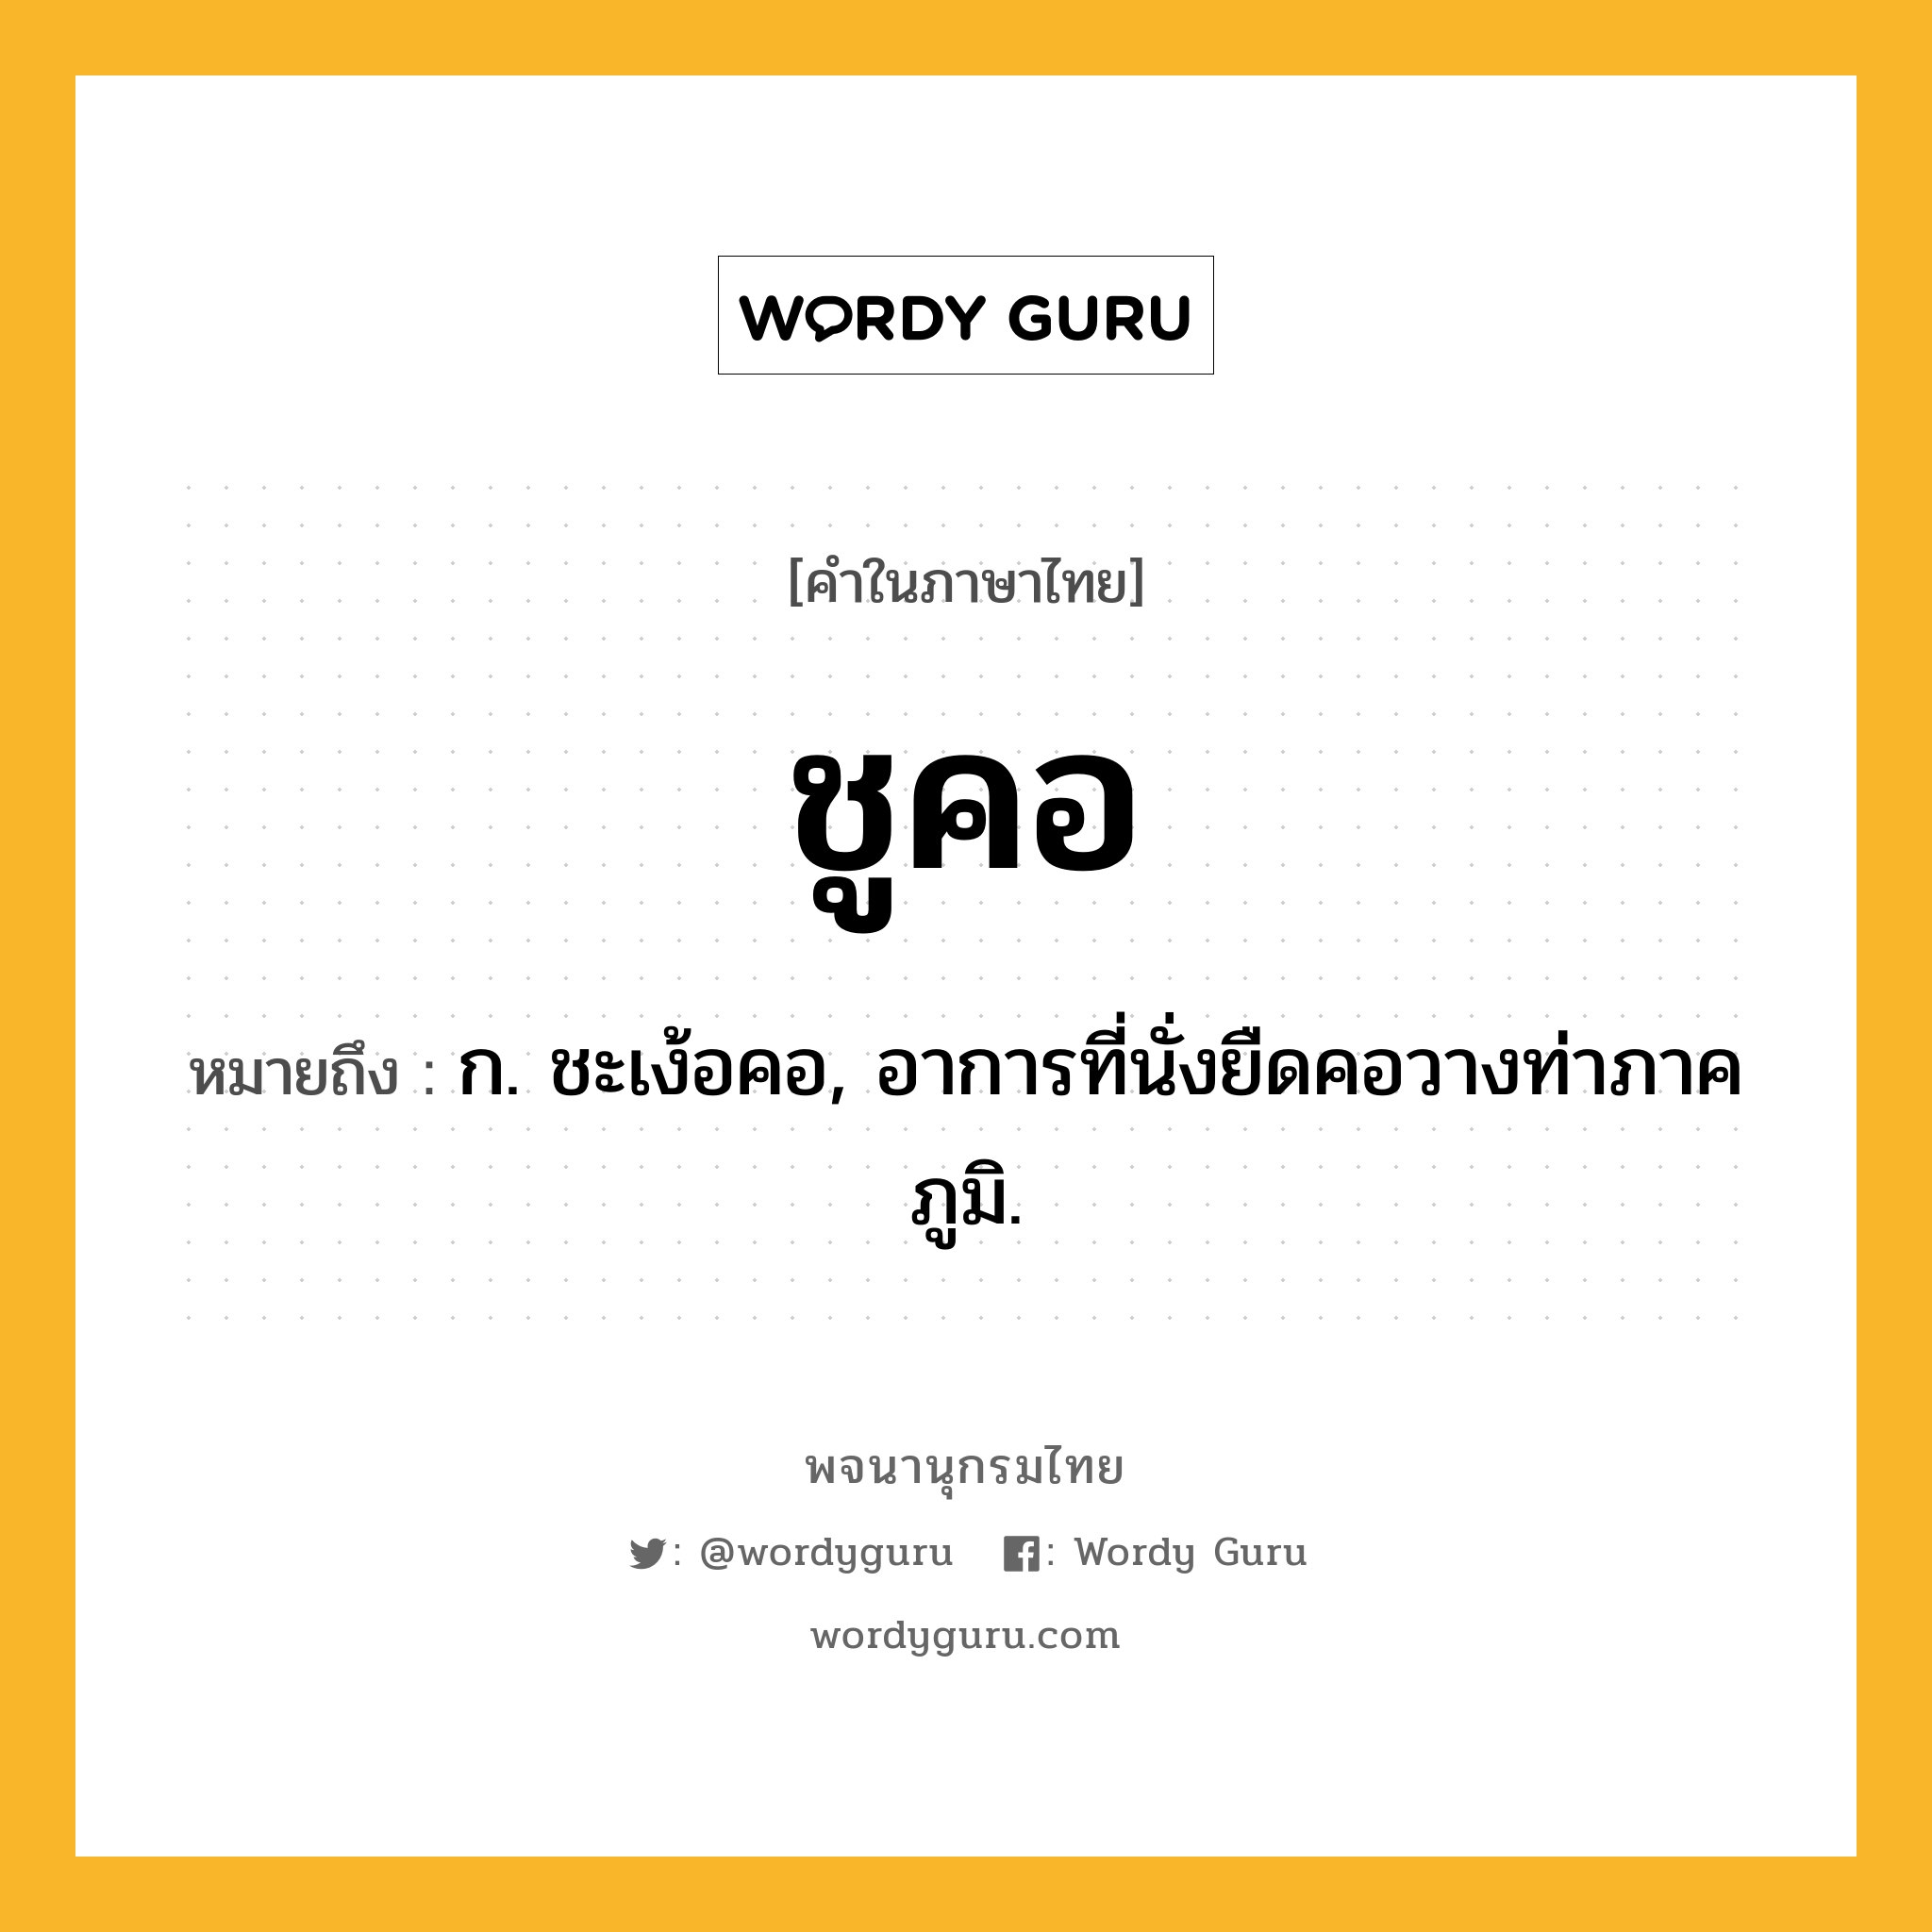 ชูคอ หมายถึงอะไร?, คำในภาษาไทย ชูคอ หมายถึง ก. ชะเง้อคอ, อาการที่นั่งยืดคอวางท่าภาคภูมิ.